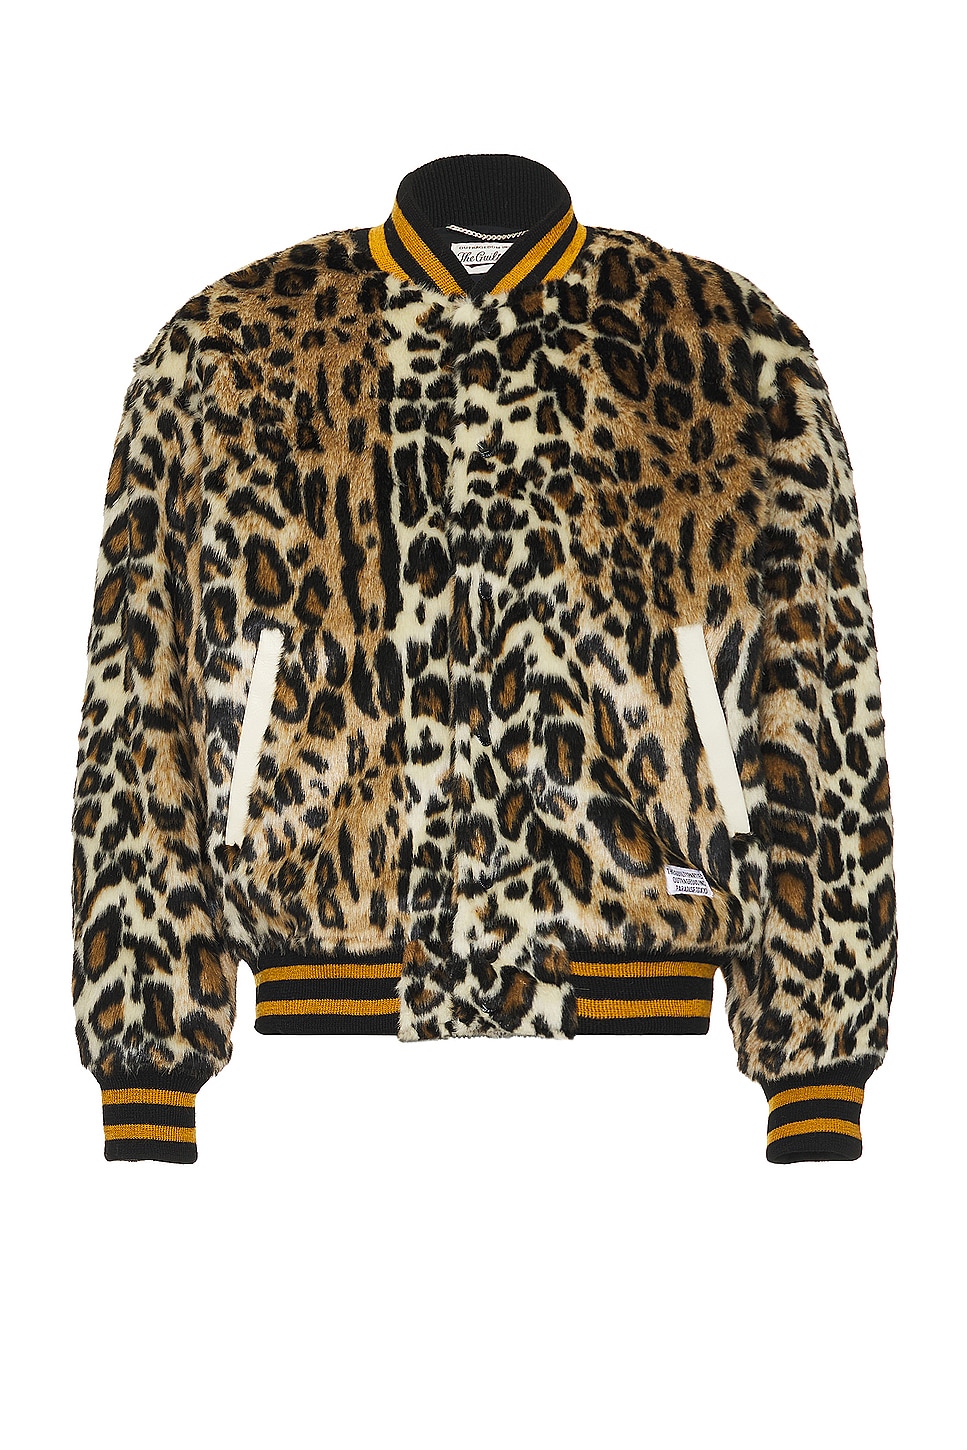 Fur Leopard Varsity Jacket in Beige